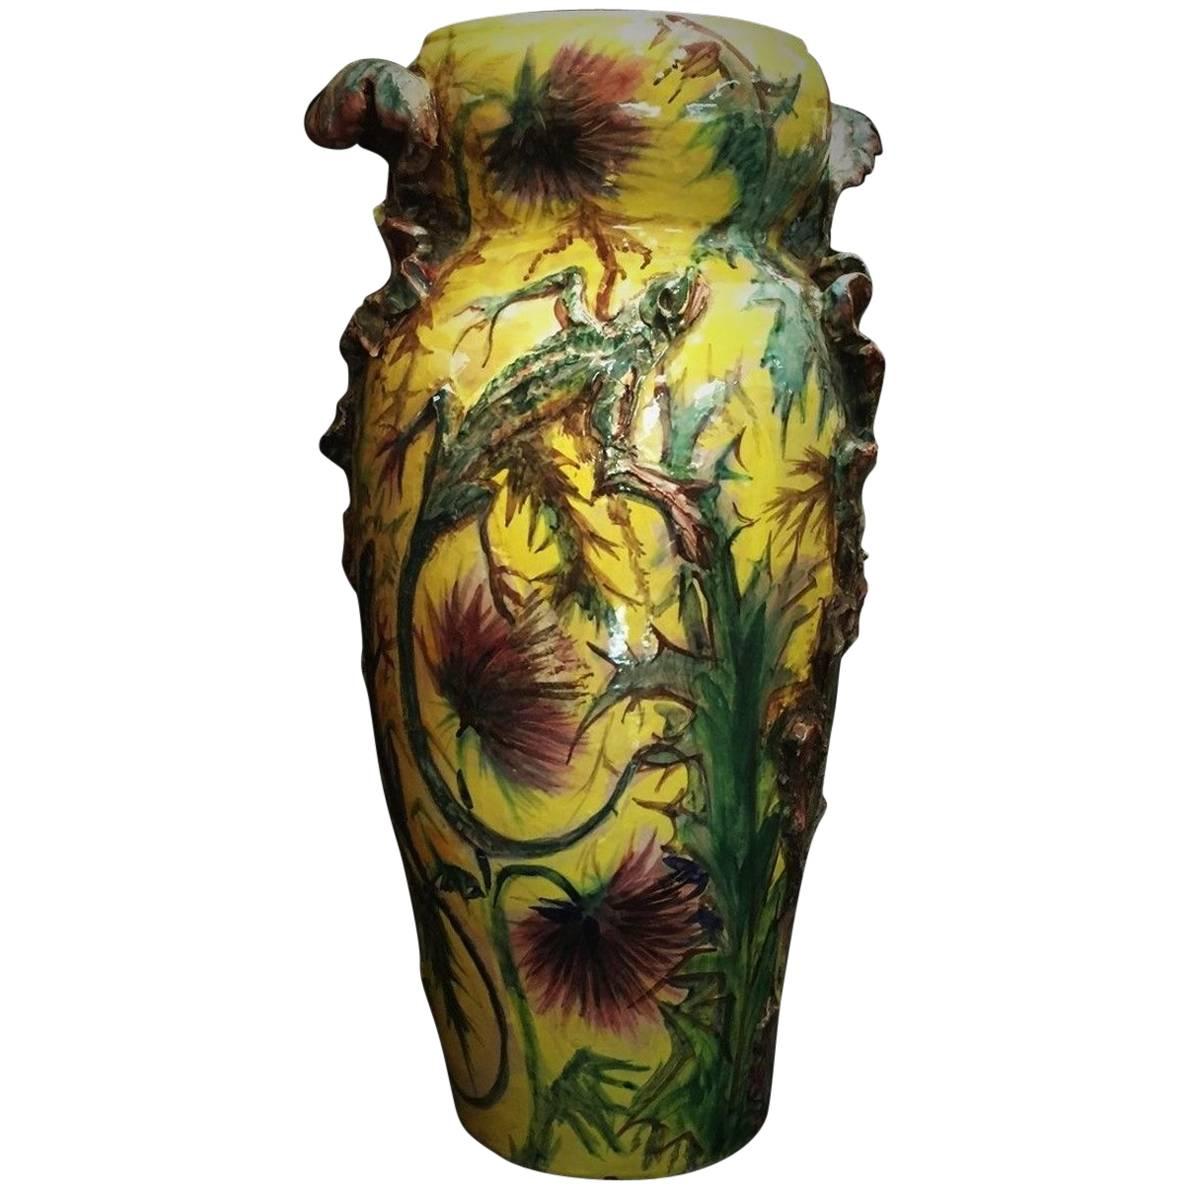 Vase en majolique Art Nouveau français avec chardons et lézards, datant d'environ 1900